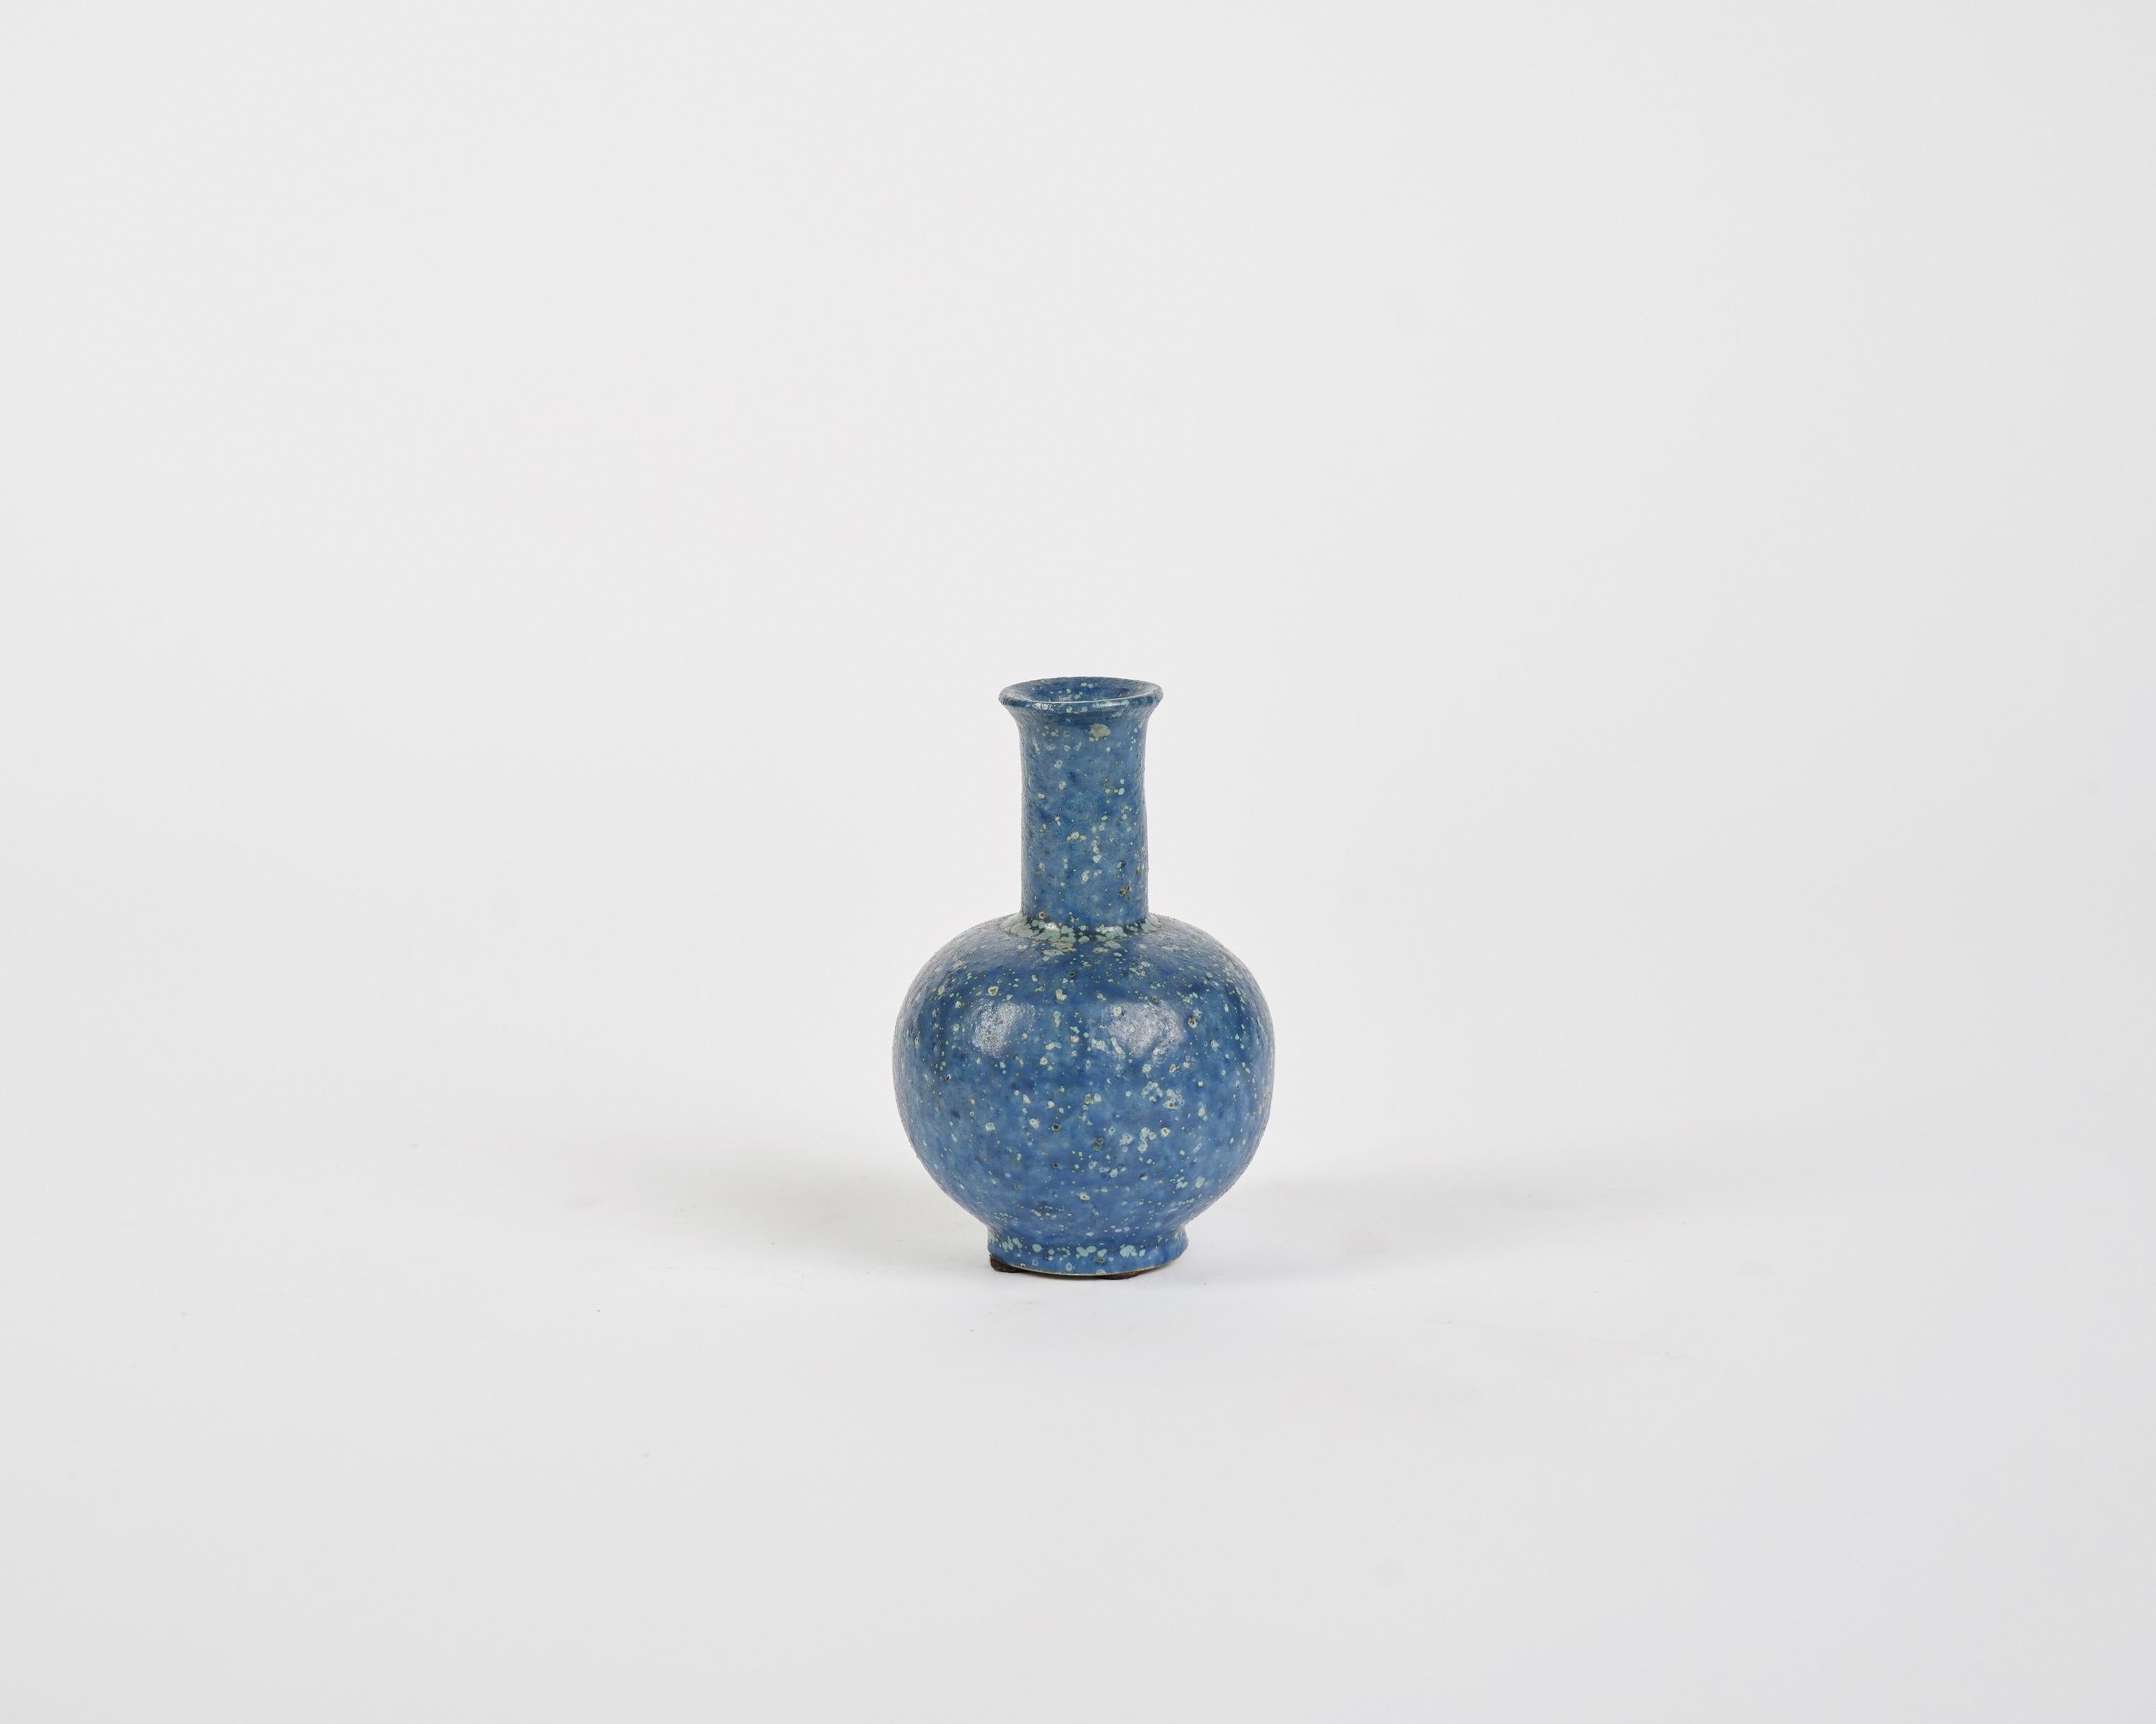 Danish Arne Bang, Small Speckled Blue Ceramic Vase, Denmark, 1930s